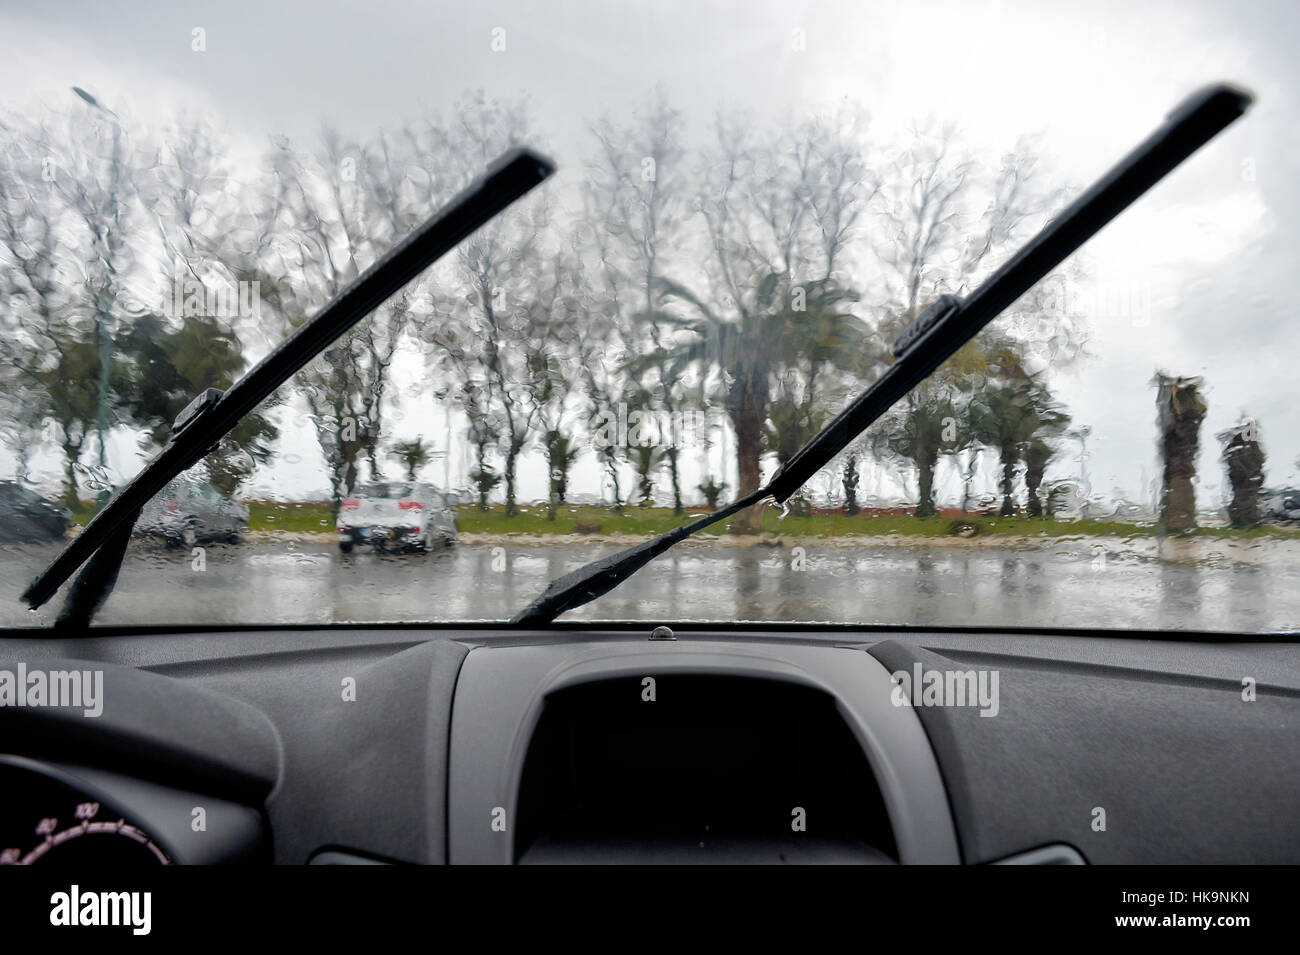 La guida sotto la pioggia con il tergivetro del parabrezza Foto Stock